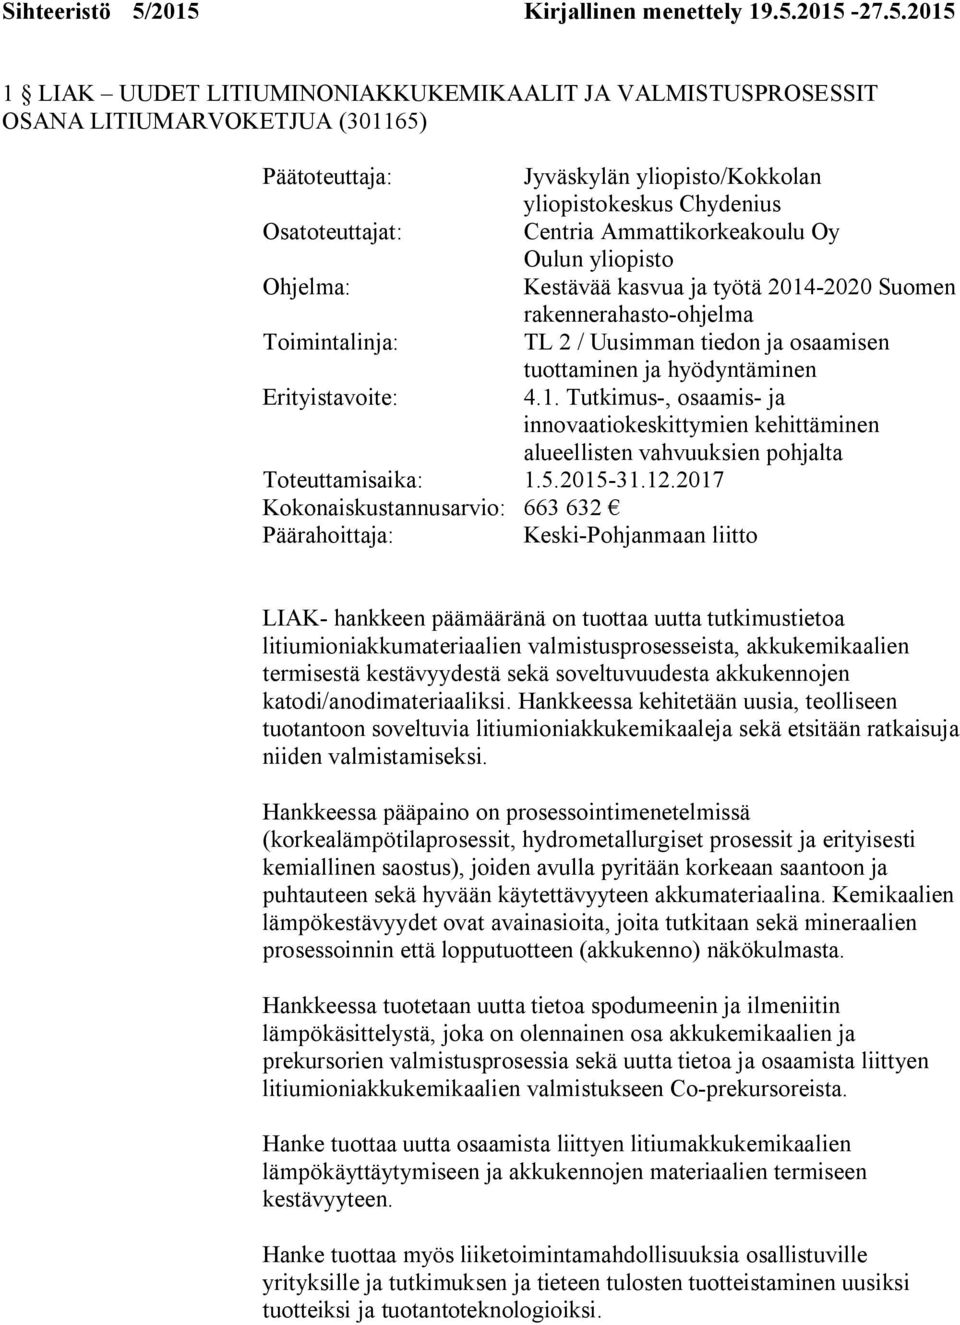 yliopistokeskus Chydenius Osatoteuttajat: Centria Ammattikorkeakoulu Oy Oulun yliopisto Ohjelma: Kestävää kasvua ja työtä 2014-2020 Suomen rakennerahasto-ohjelma Toimintalinja: TL 2 / Uusimman tiedon